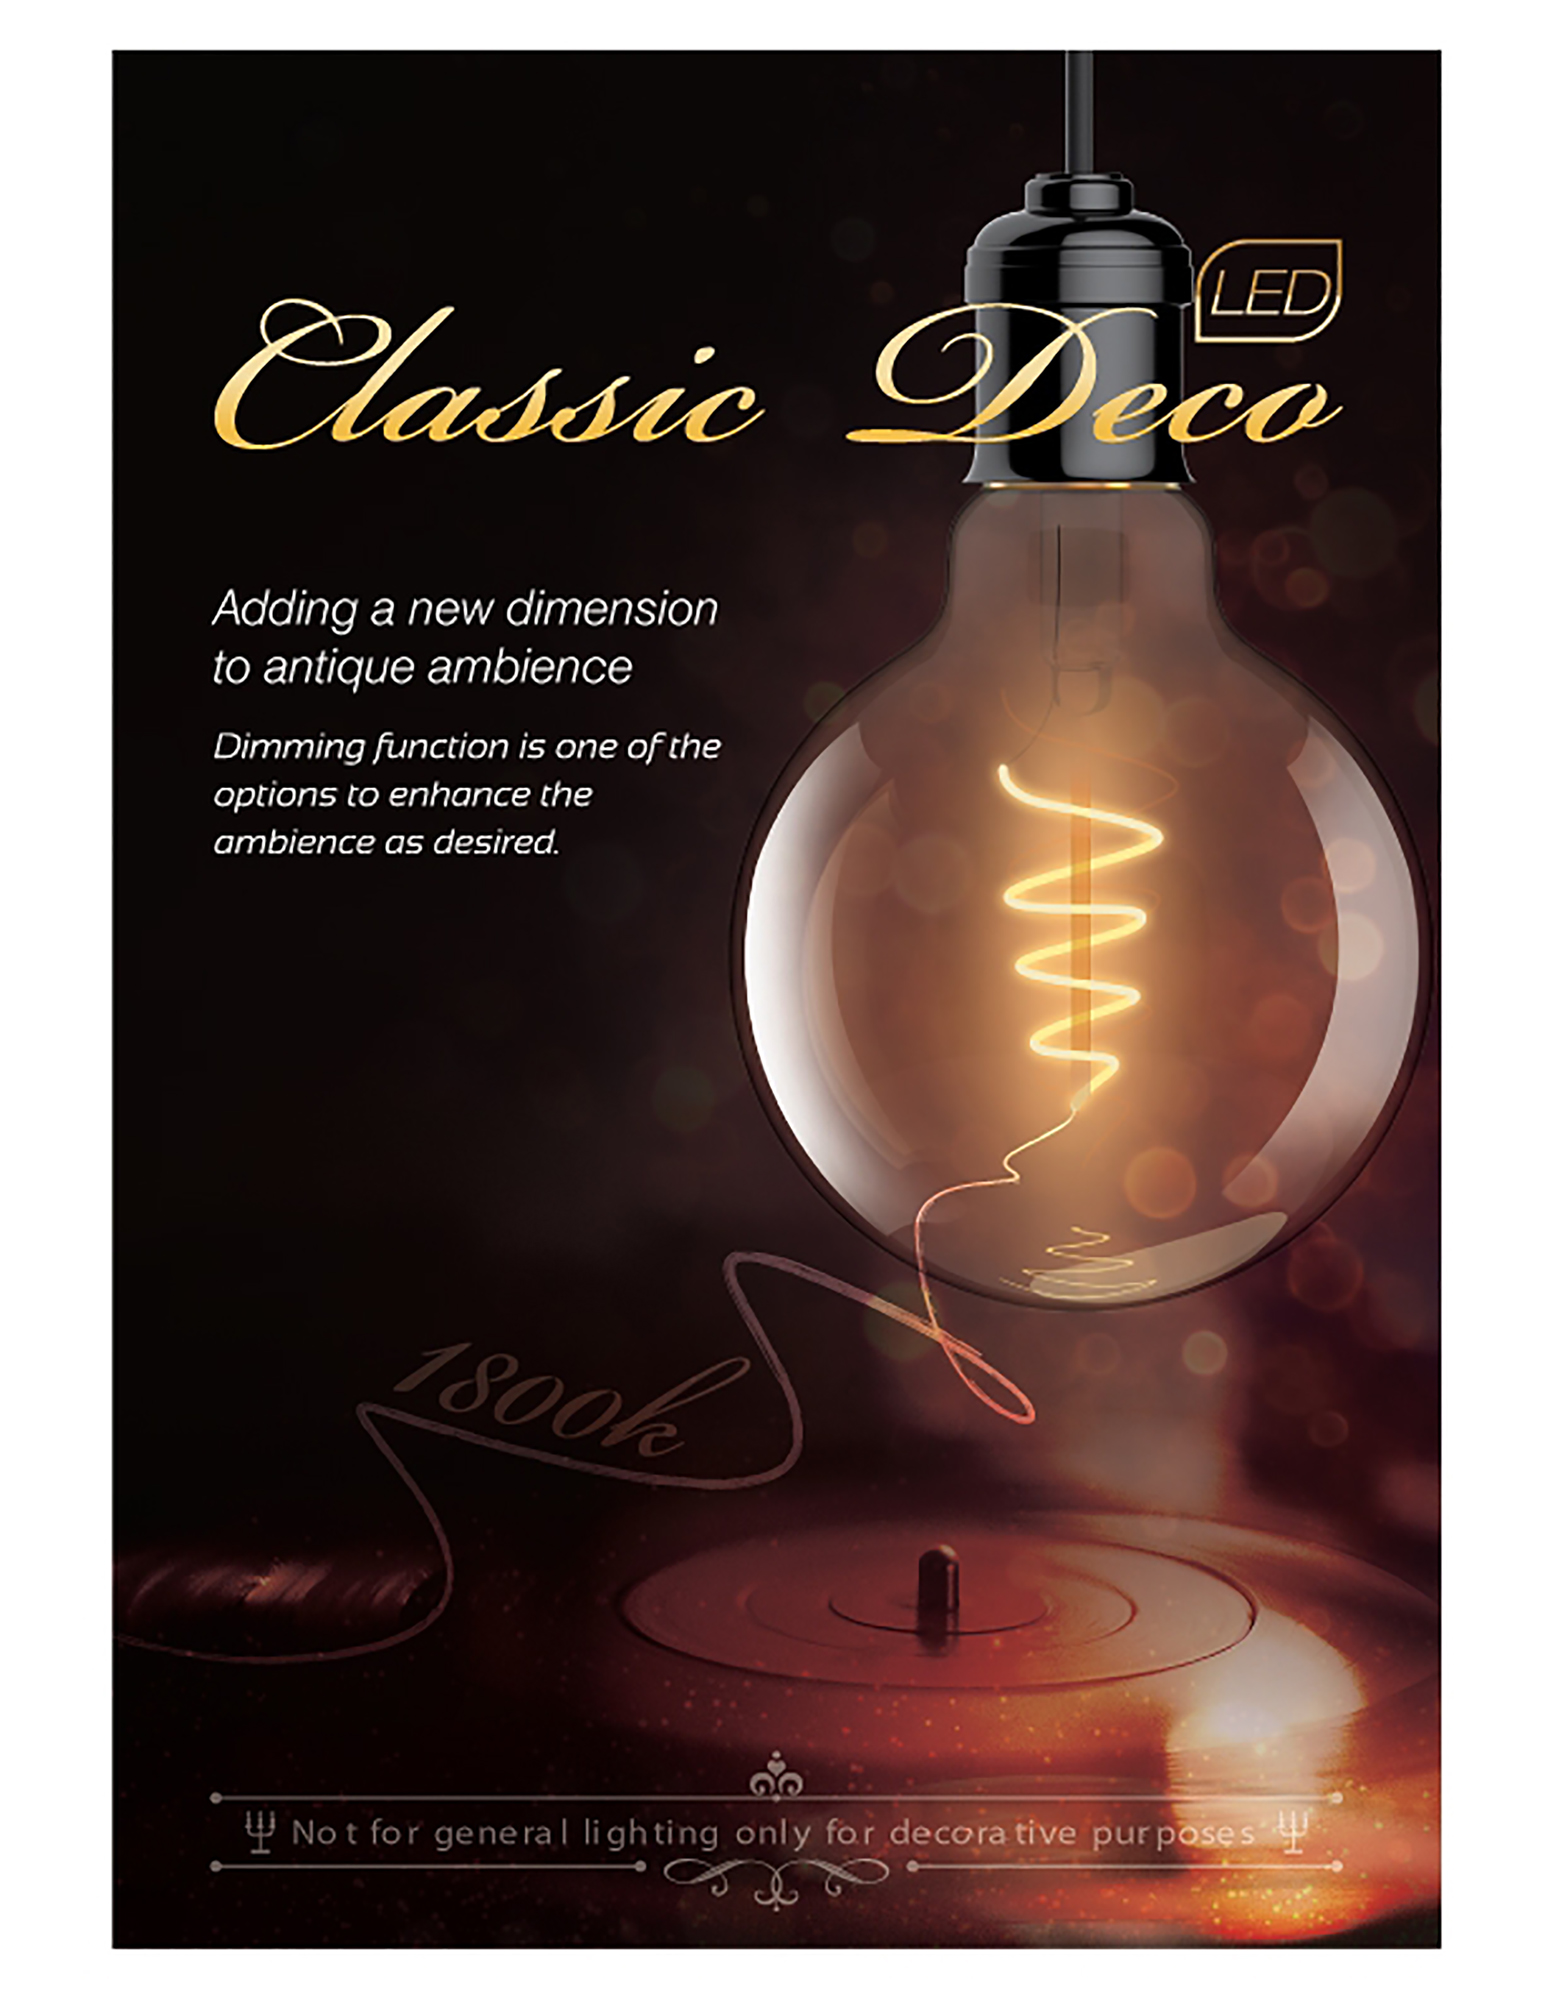 Classic Deco LED Lamps Luxram Globes